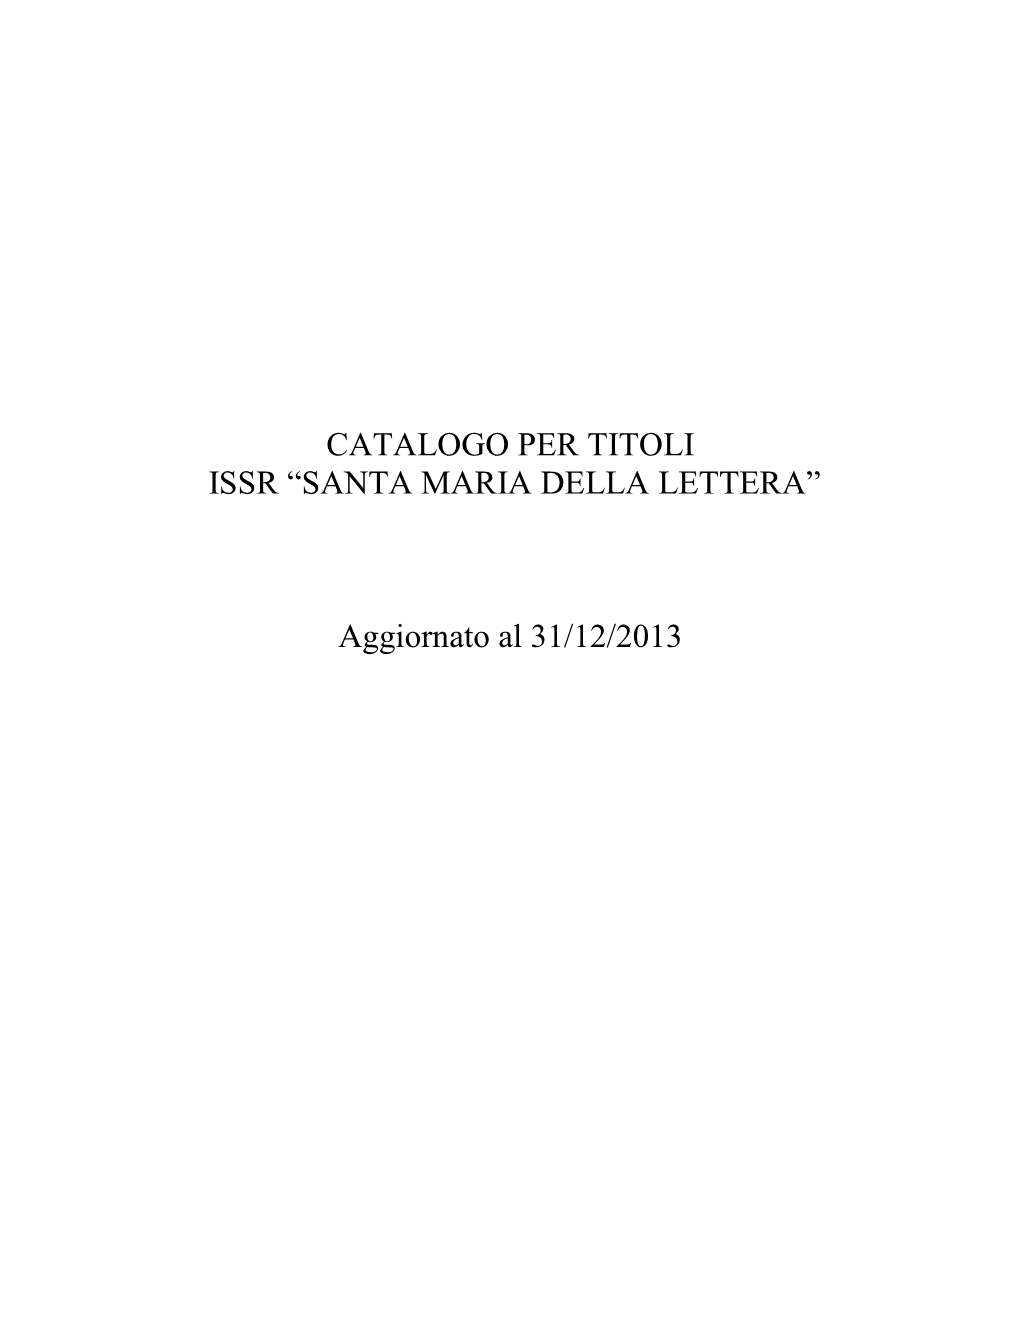 Catalogo Per Titoli Issr “Santa Maria Della Lettera”